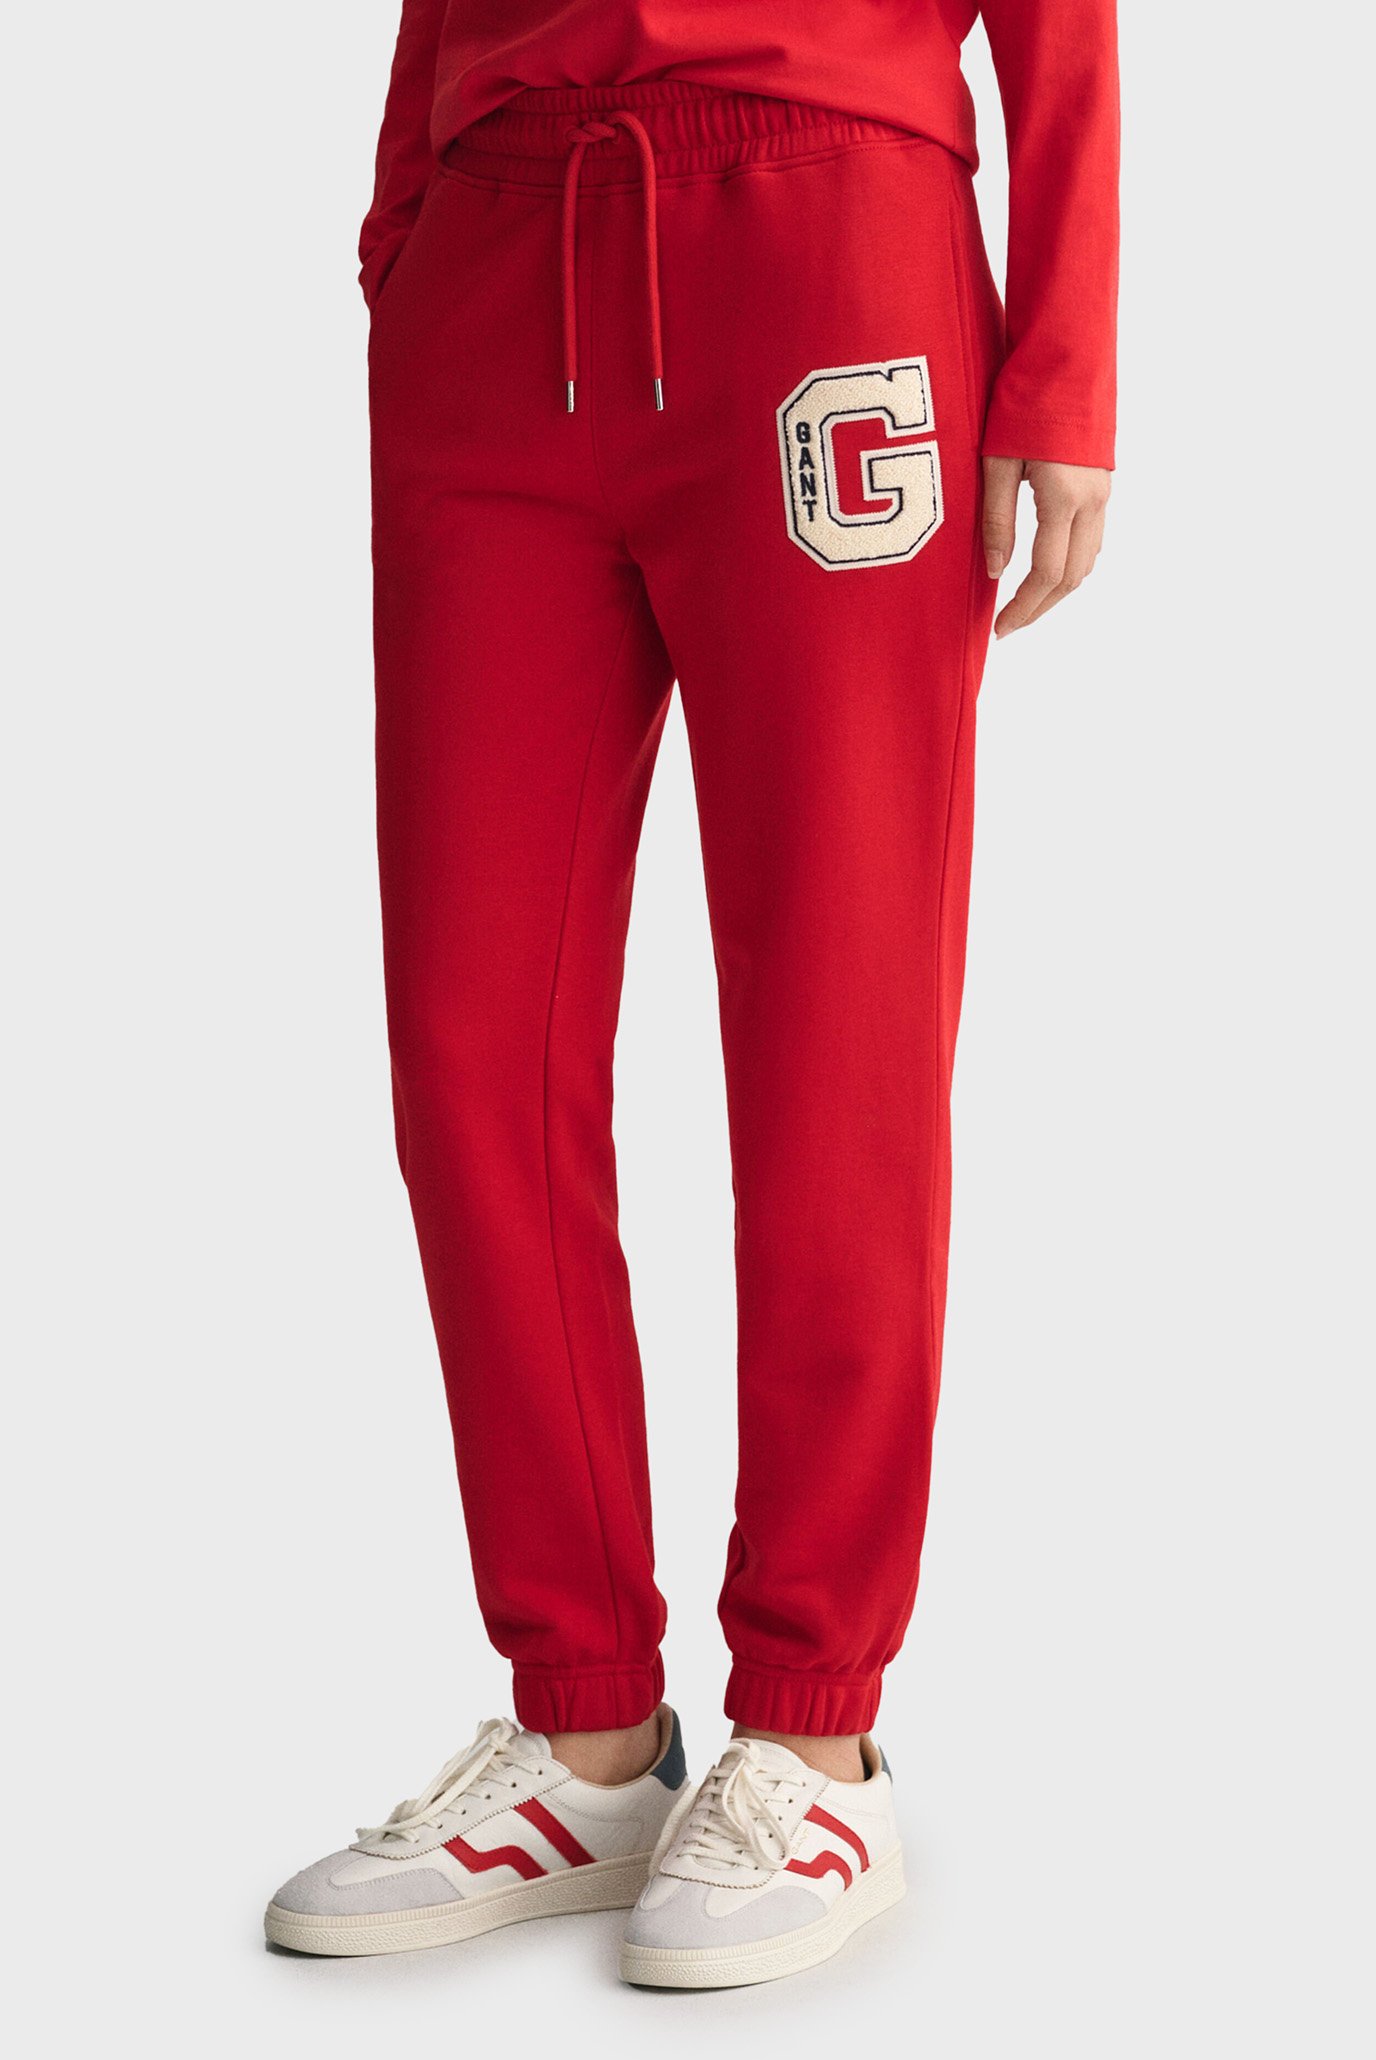 Женские красные спортивные брюки REG G 1